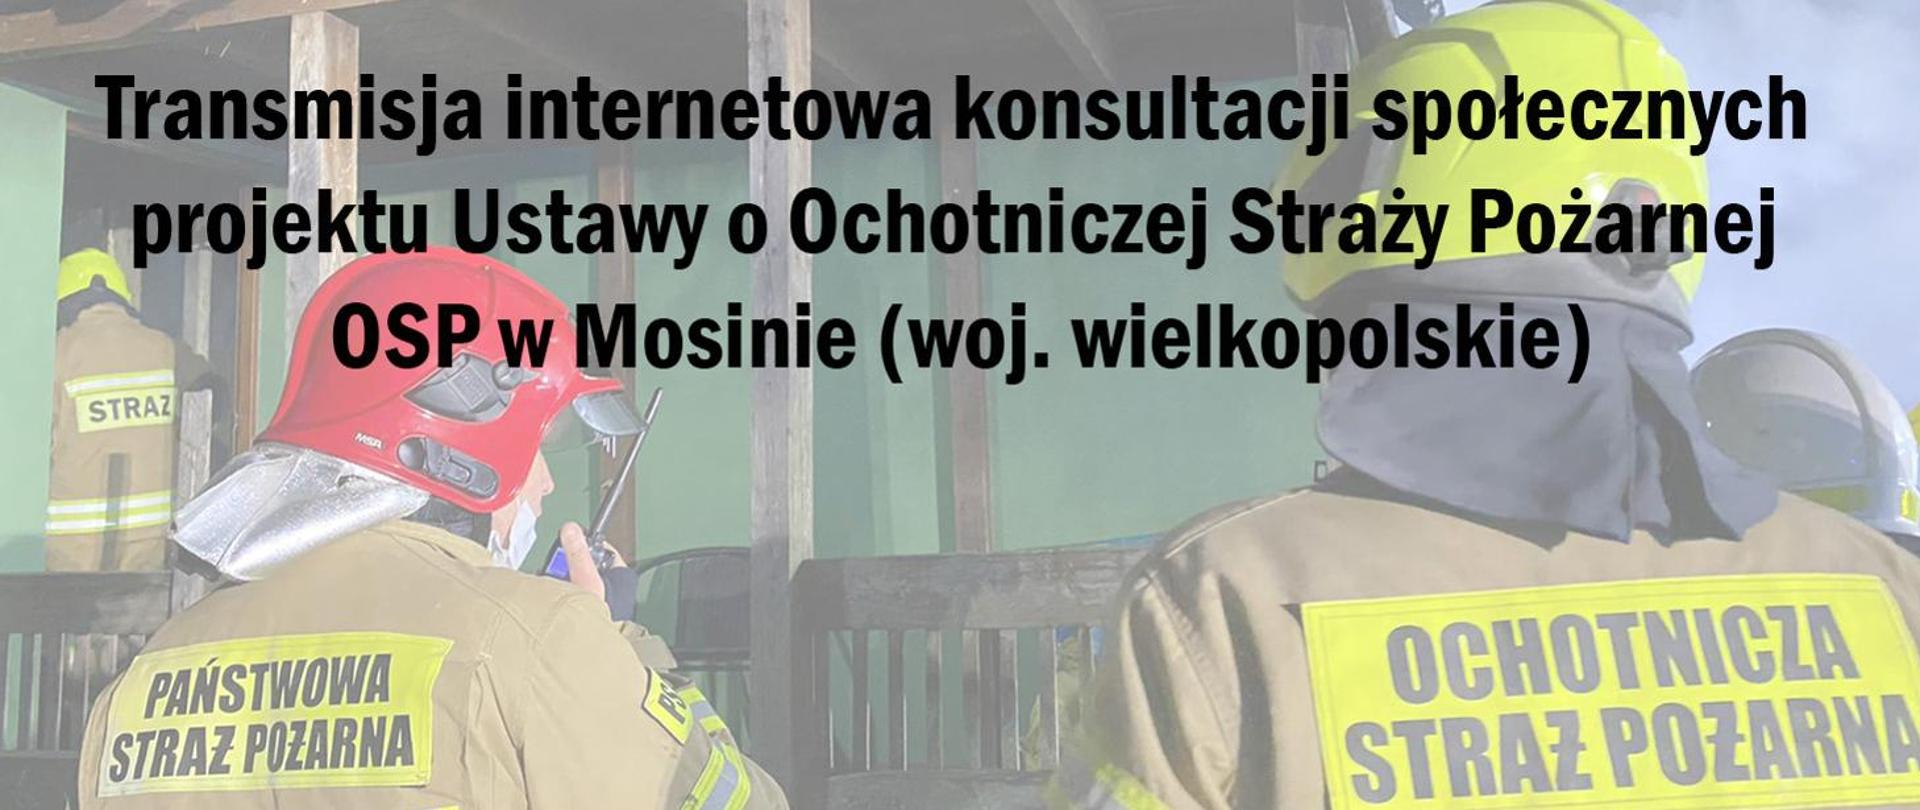 Transmisja internetowa konsultacji społecznych projektu Ustawy o Ochotniczej Straży Pożarnej, ikona przedstawiająca dwóch strażaków w ubraniu specjalnym. 